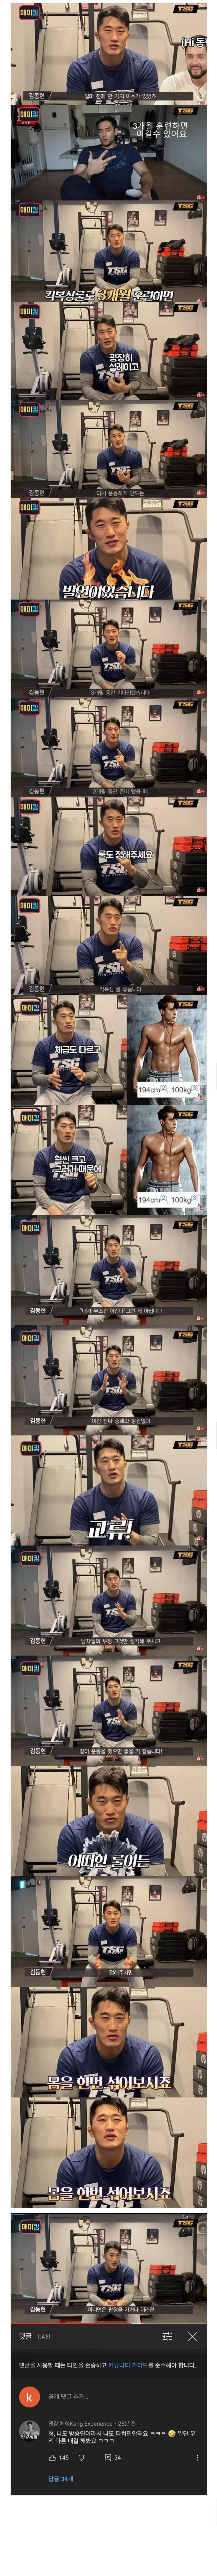 줄리엔강 도전, 김동현 대답, 그리고 줄리엔강 댓글